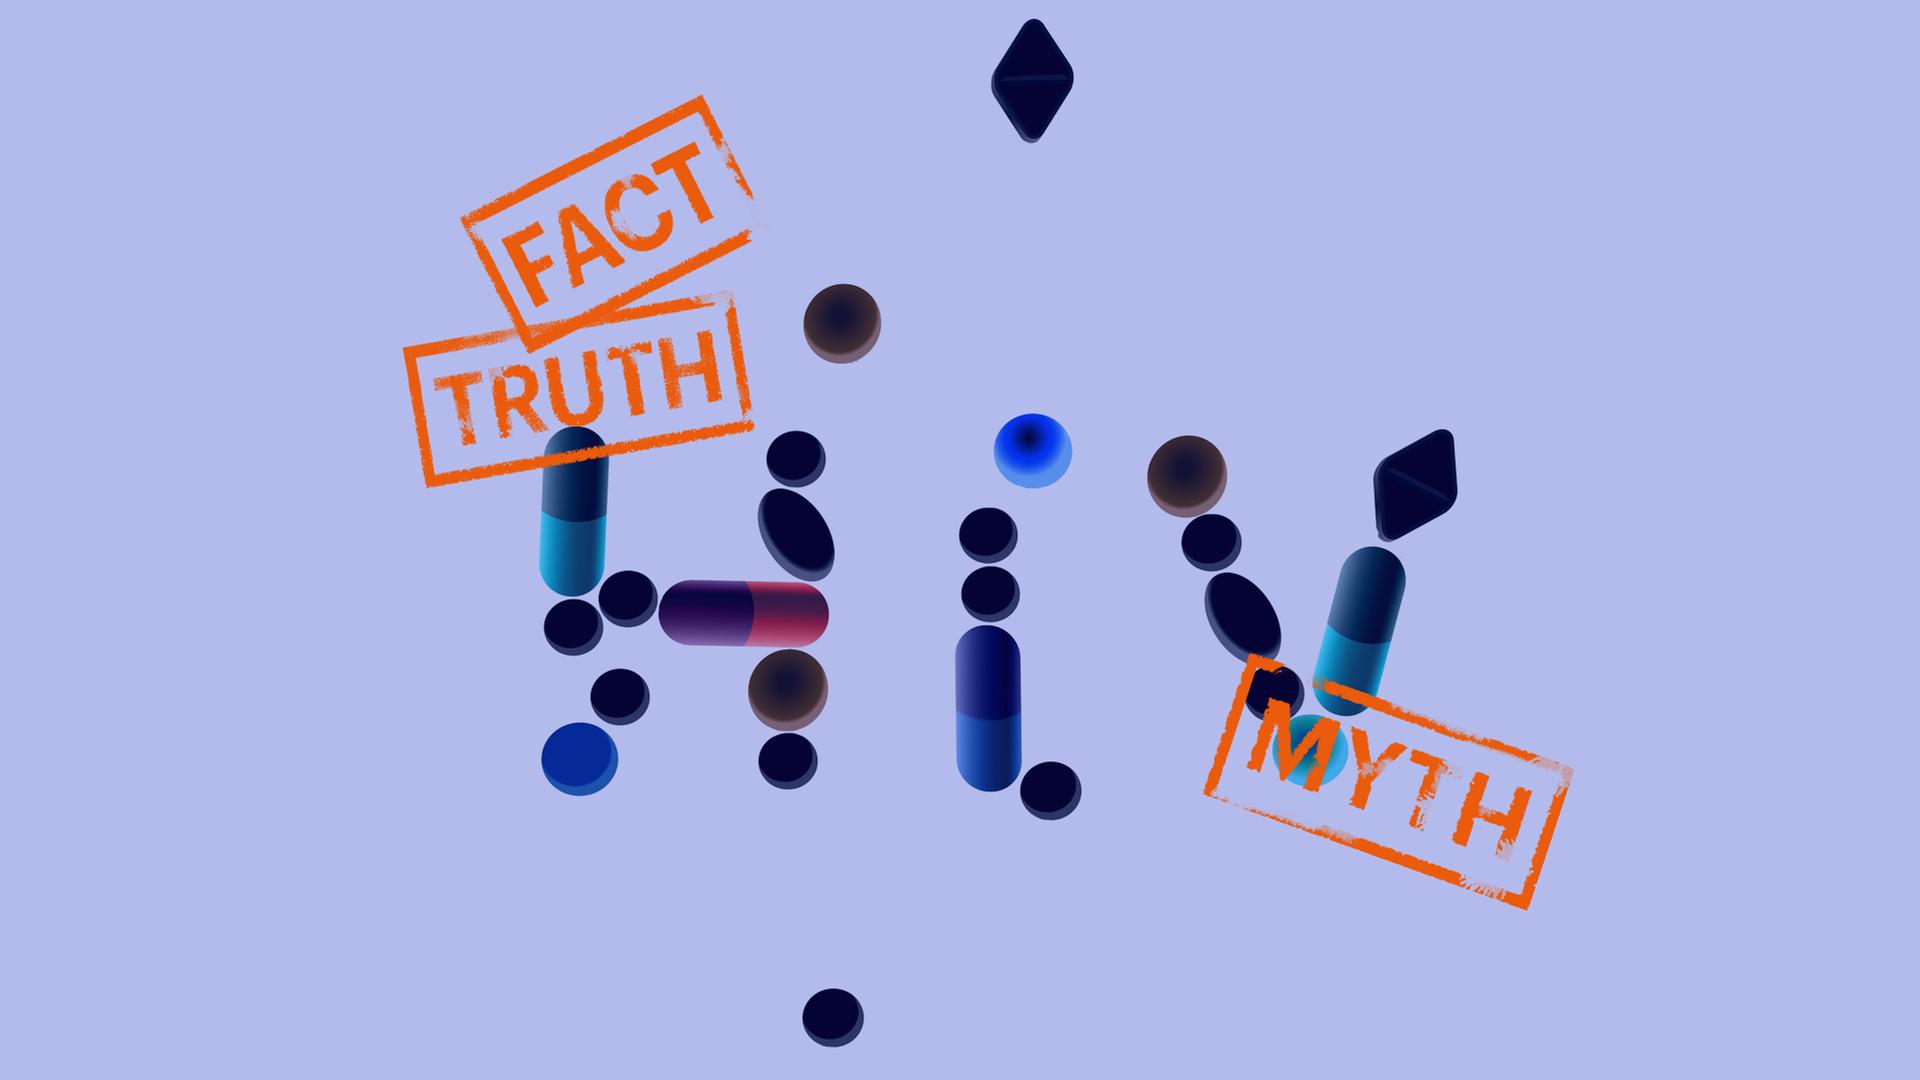 Blauer Hintergrund, zentral im Bild die Buchstaben HIV und Stempelabdrücke "Fact, Truth, Myth", Buchstaben beginnen sich aufzulösen